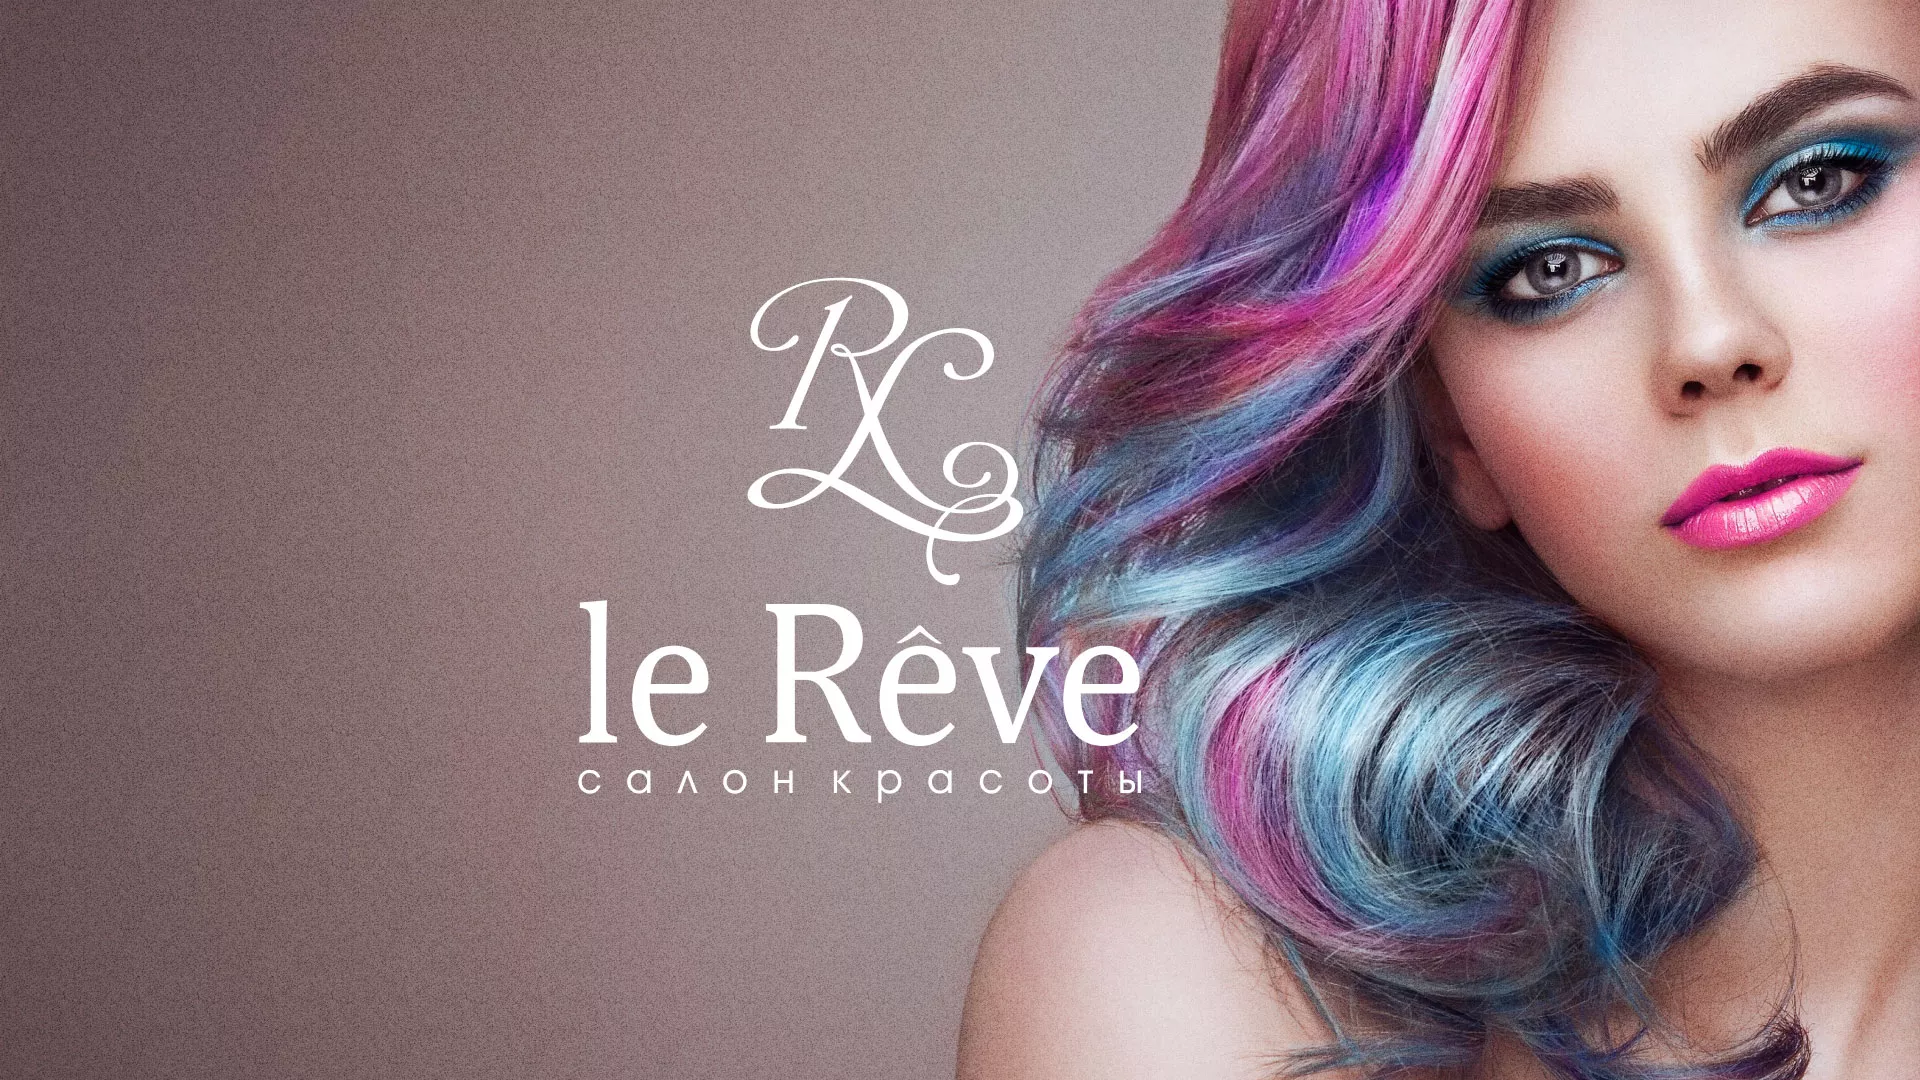 Создание сайта для салона красоты «Le Reve» в Щербинке